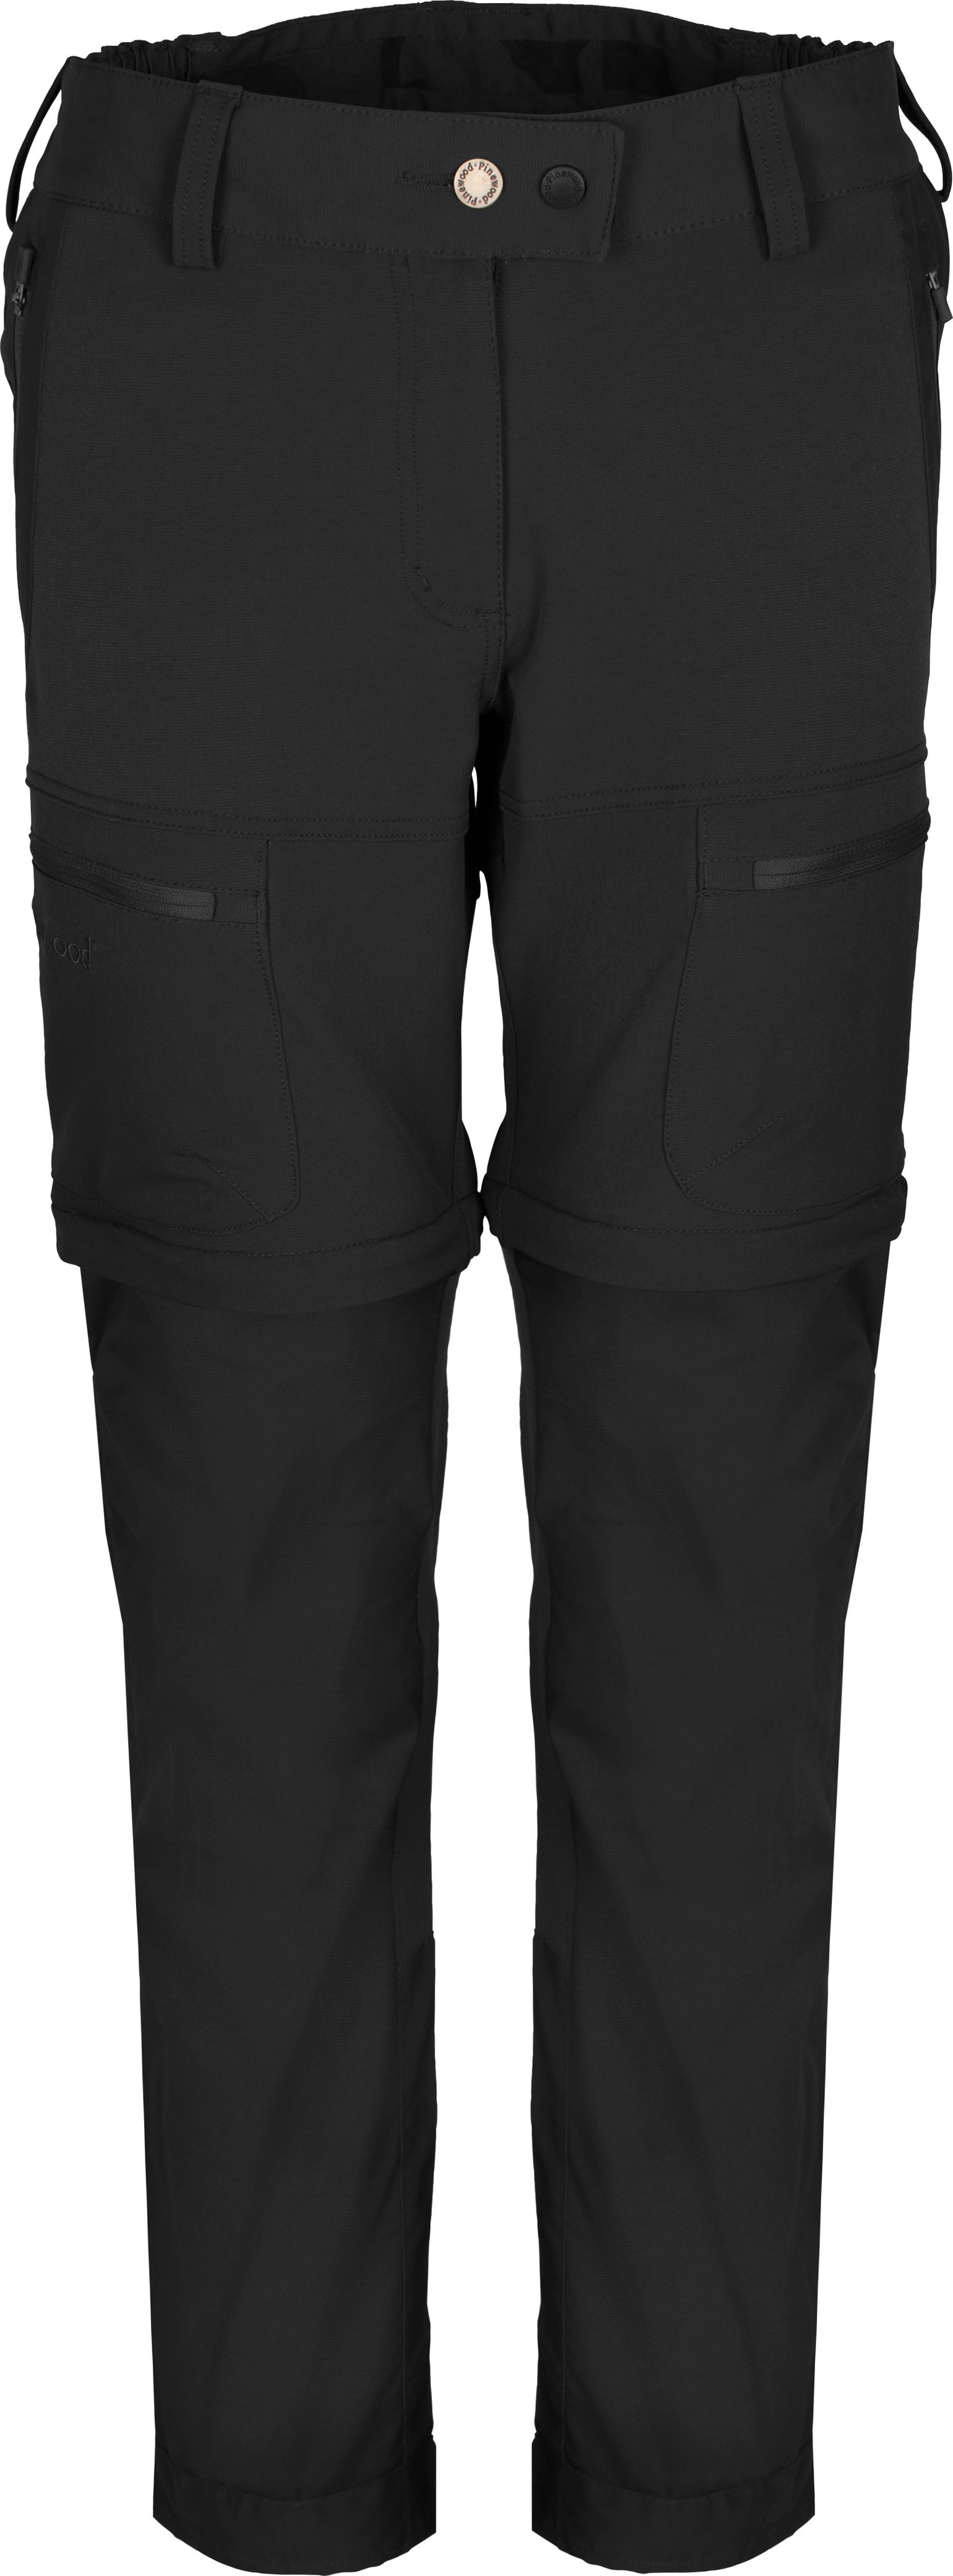 Women's Finnveden Hybrid Zip-Off Trousers Black